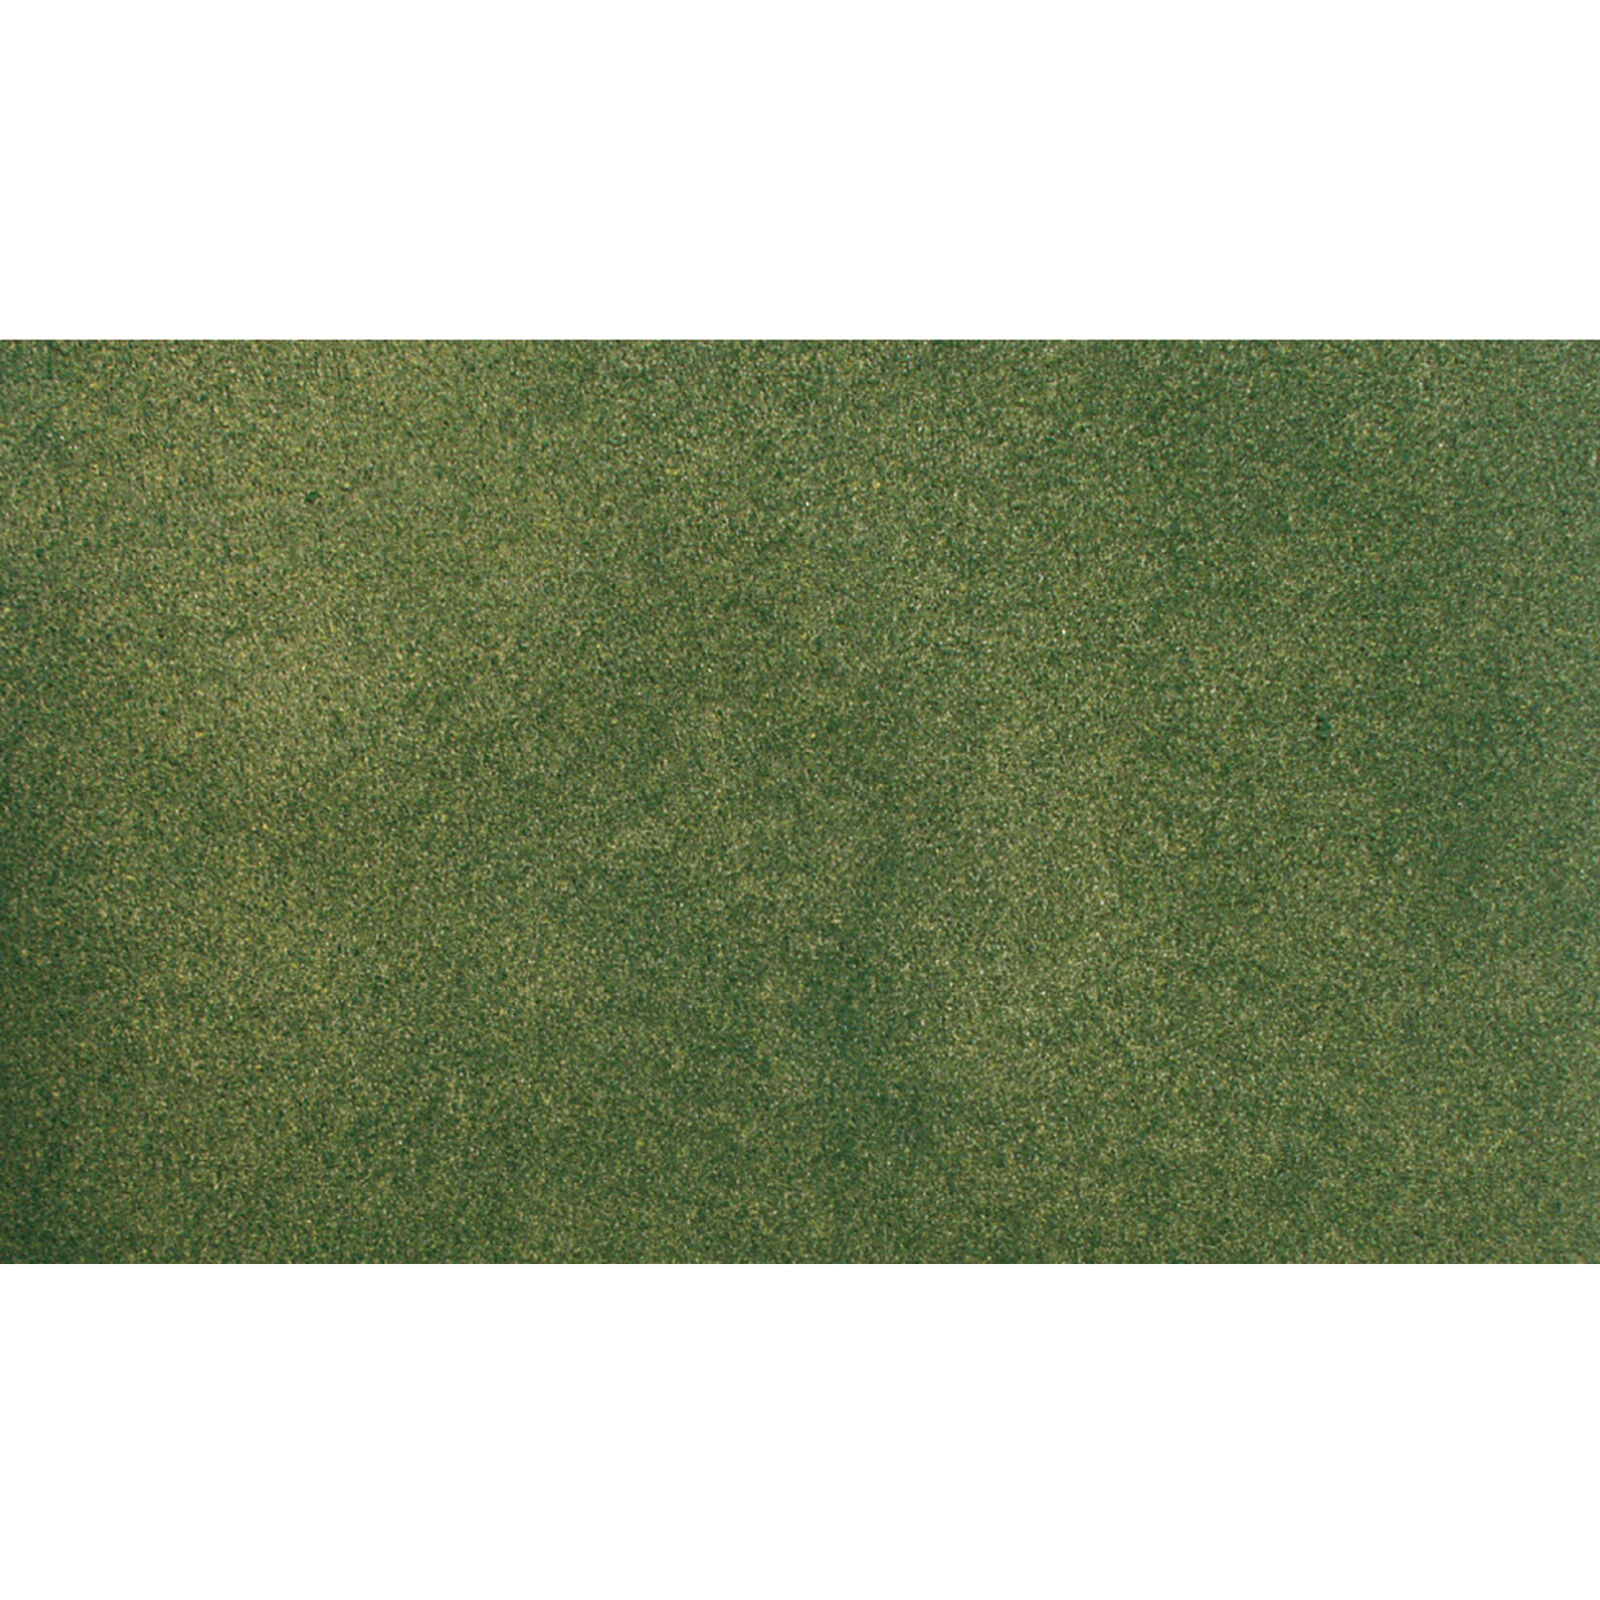 25" x 33" Grass Mat, Green